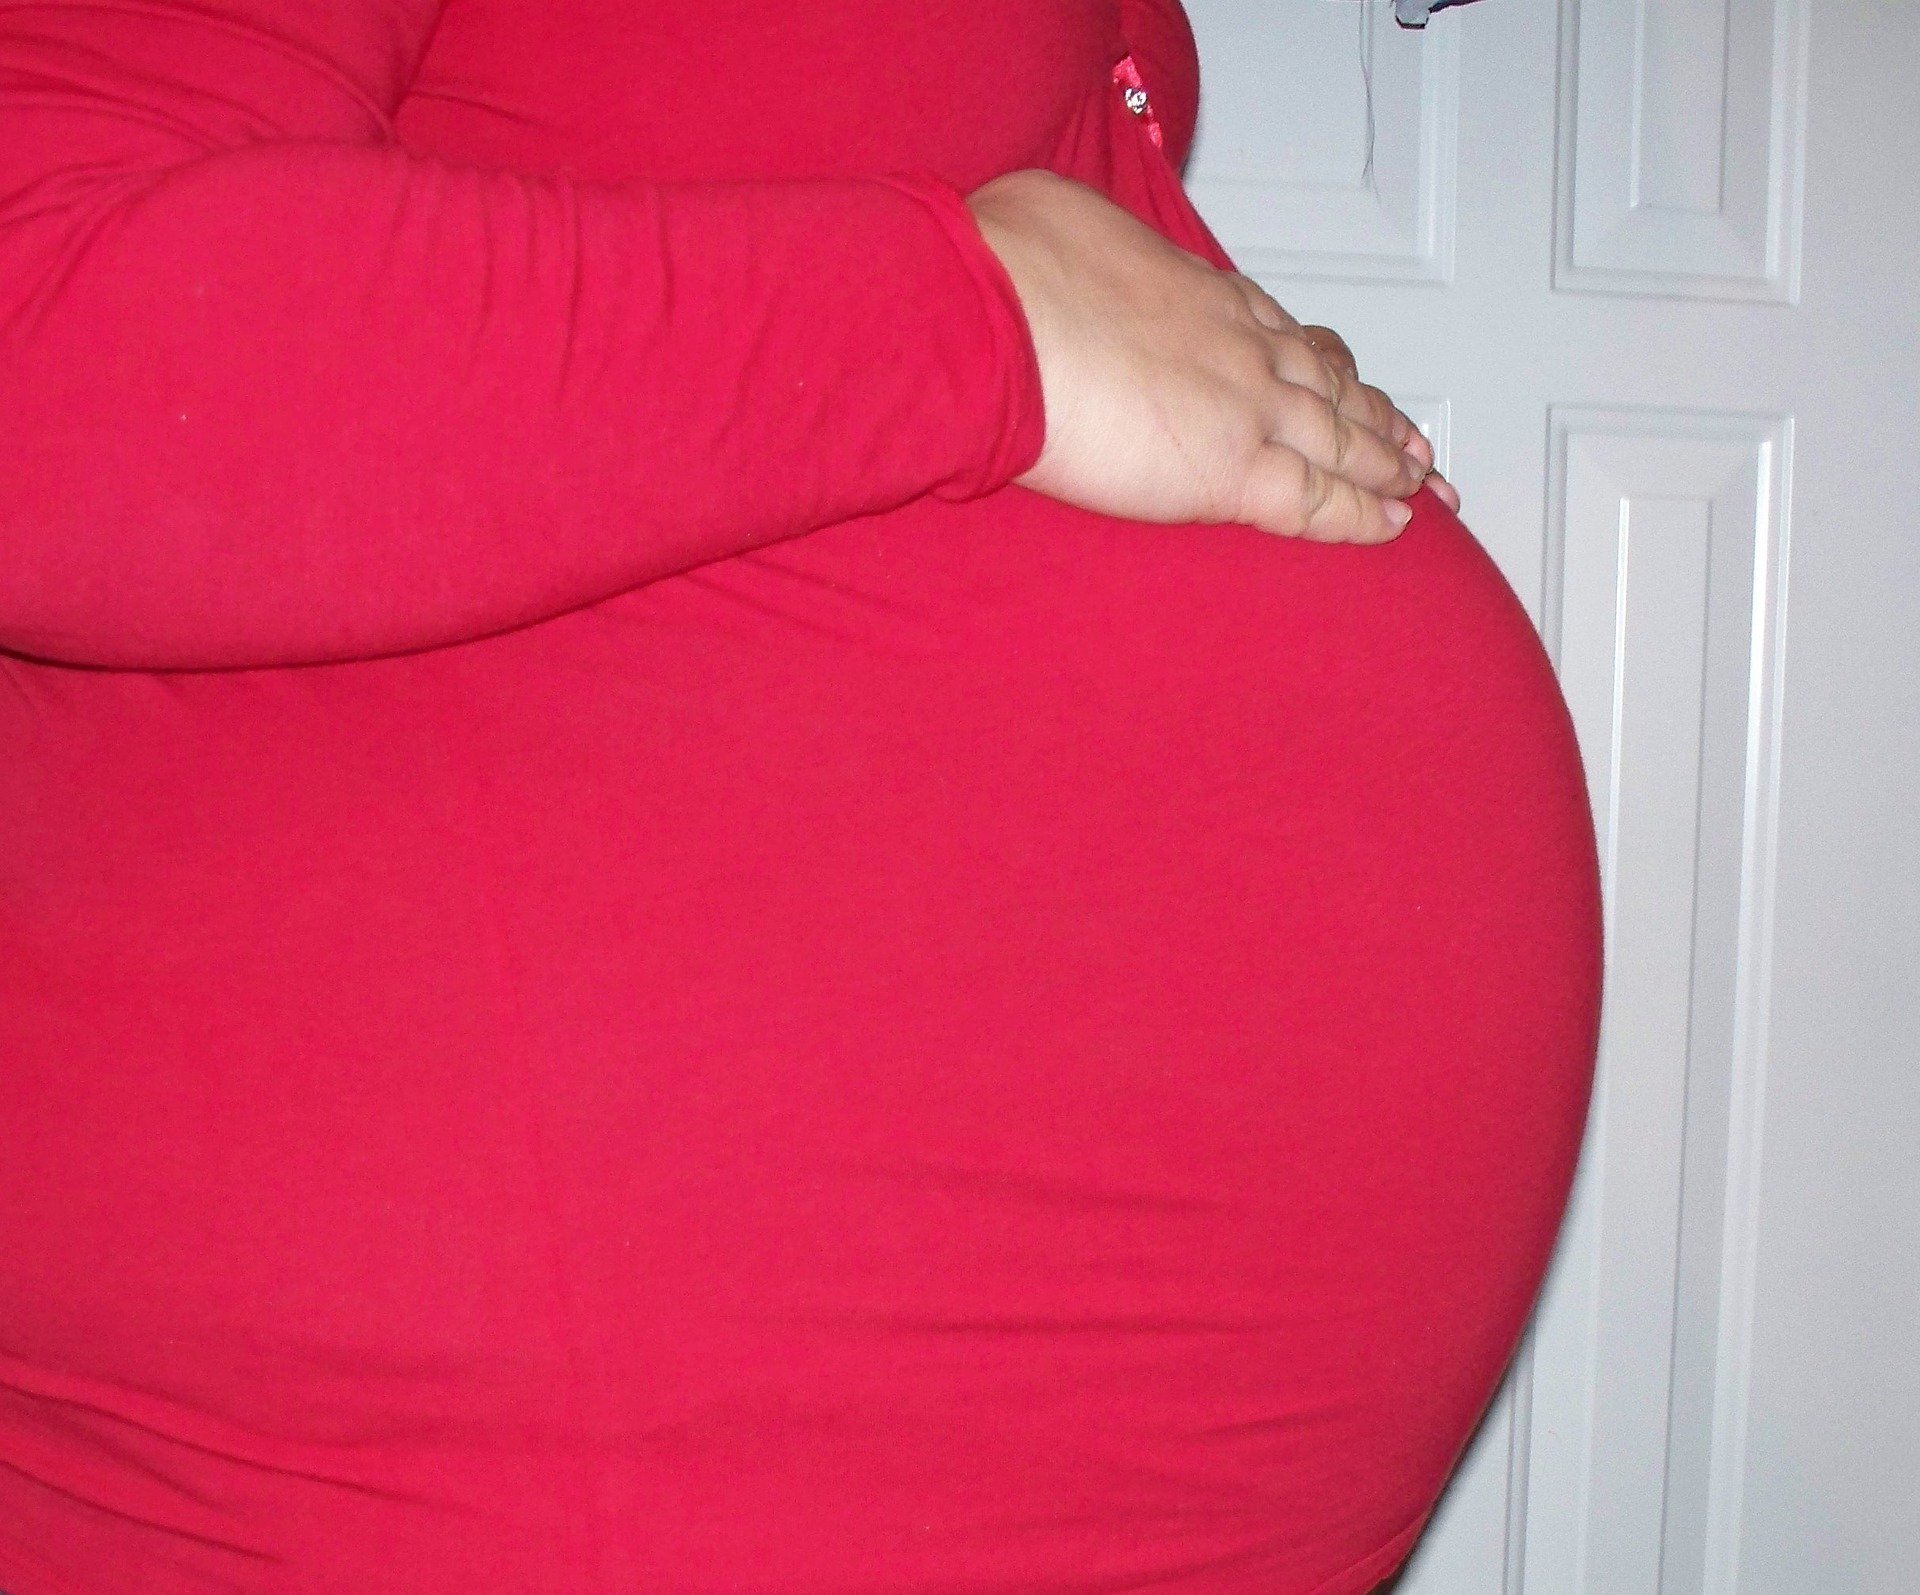 هل المضاد الحيوي يضر بالحامل؟